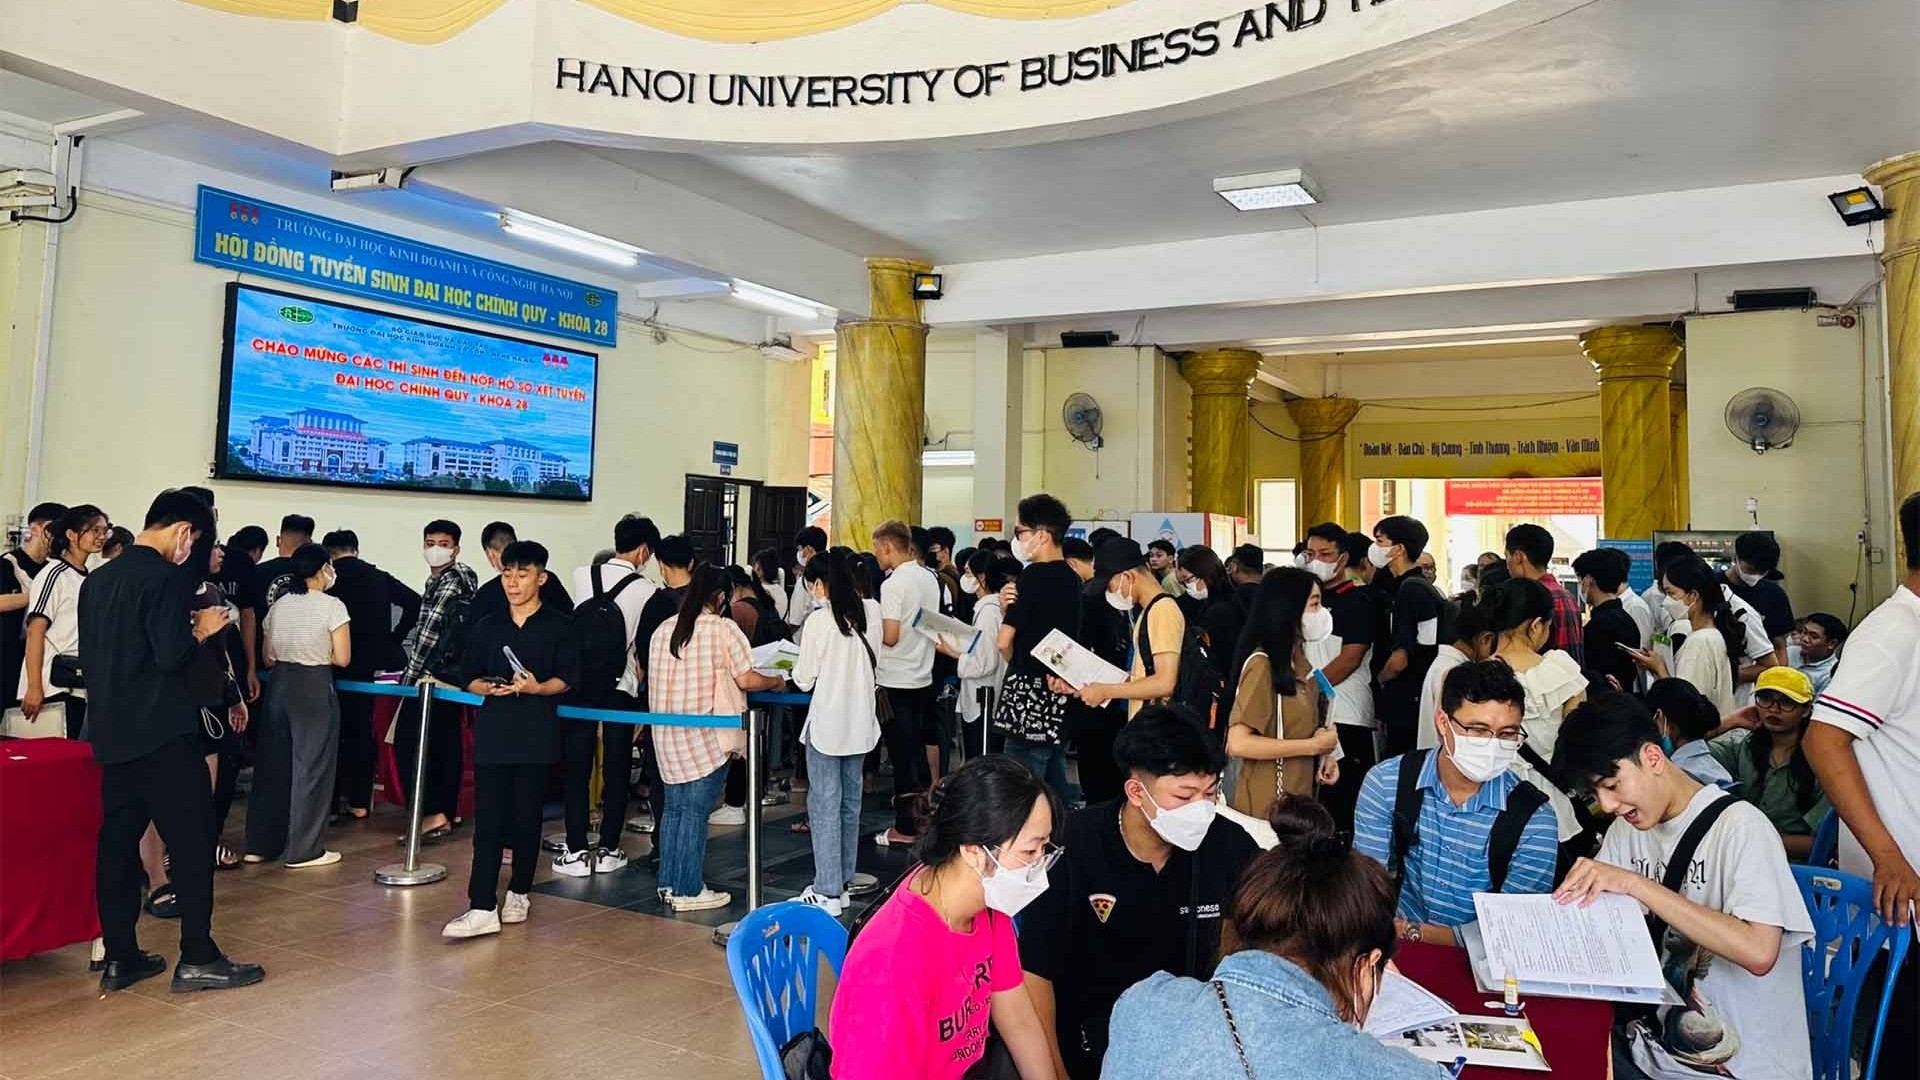 Trường Đại học Kinh doanh và Công nghệ Hà Nội thông báo xét tuyển đại học chính quy Khóa 28 năm 2023